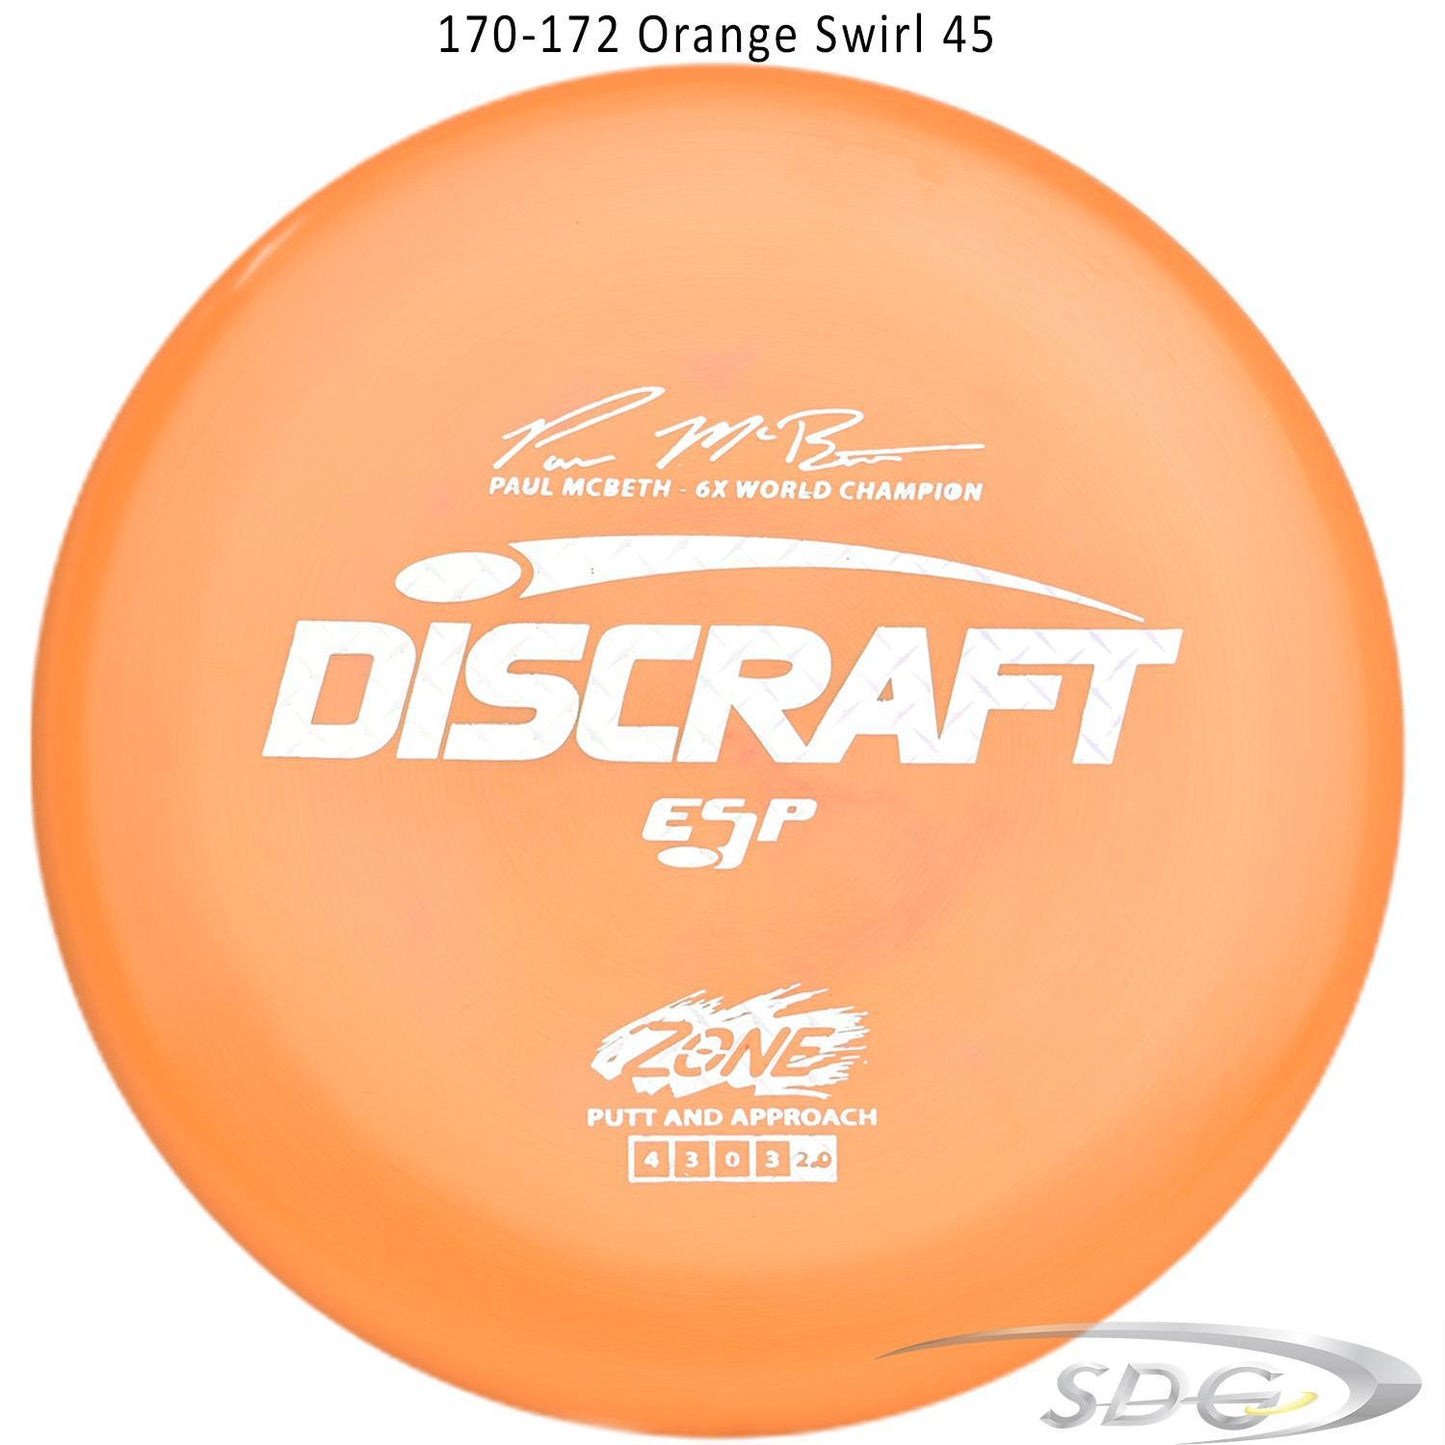 discraft-esp-zone-6x-paul-mcbeth-signature-series-disc-golf-putter 170-172 Orange Swirl 45